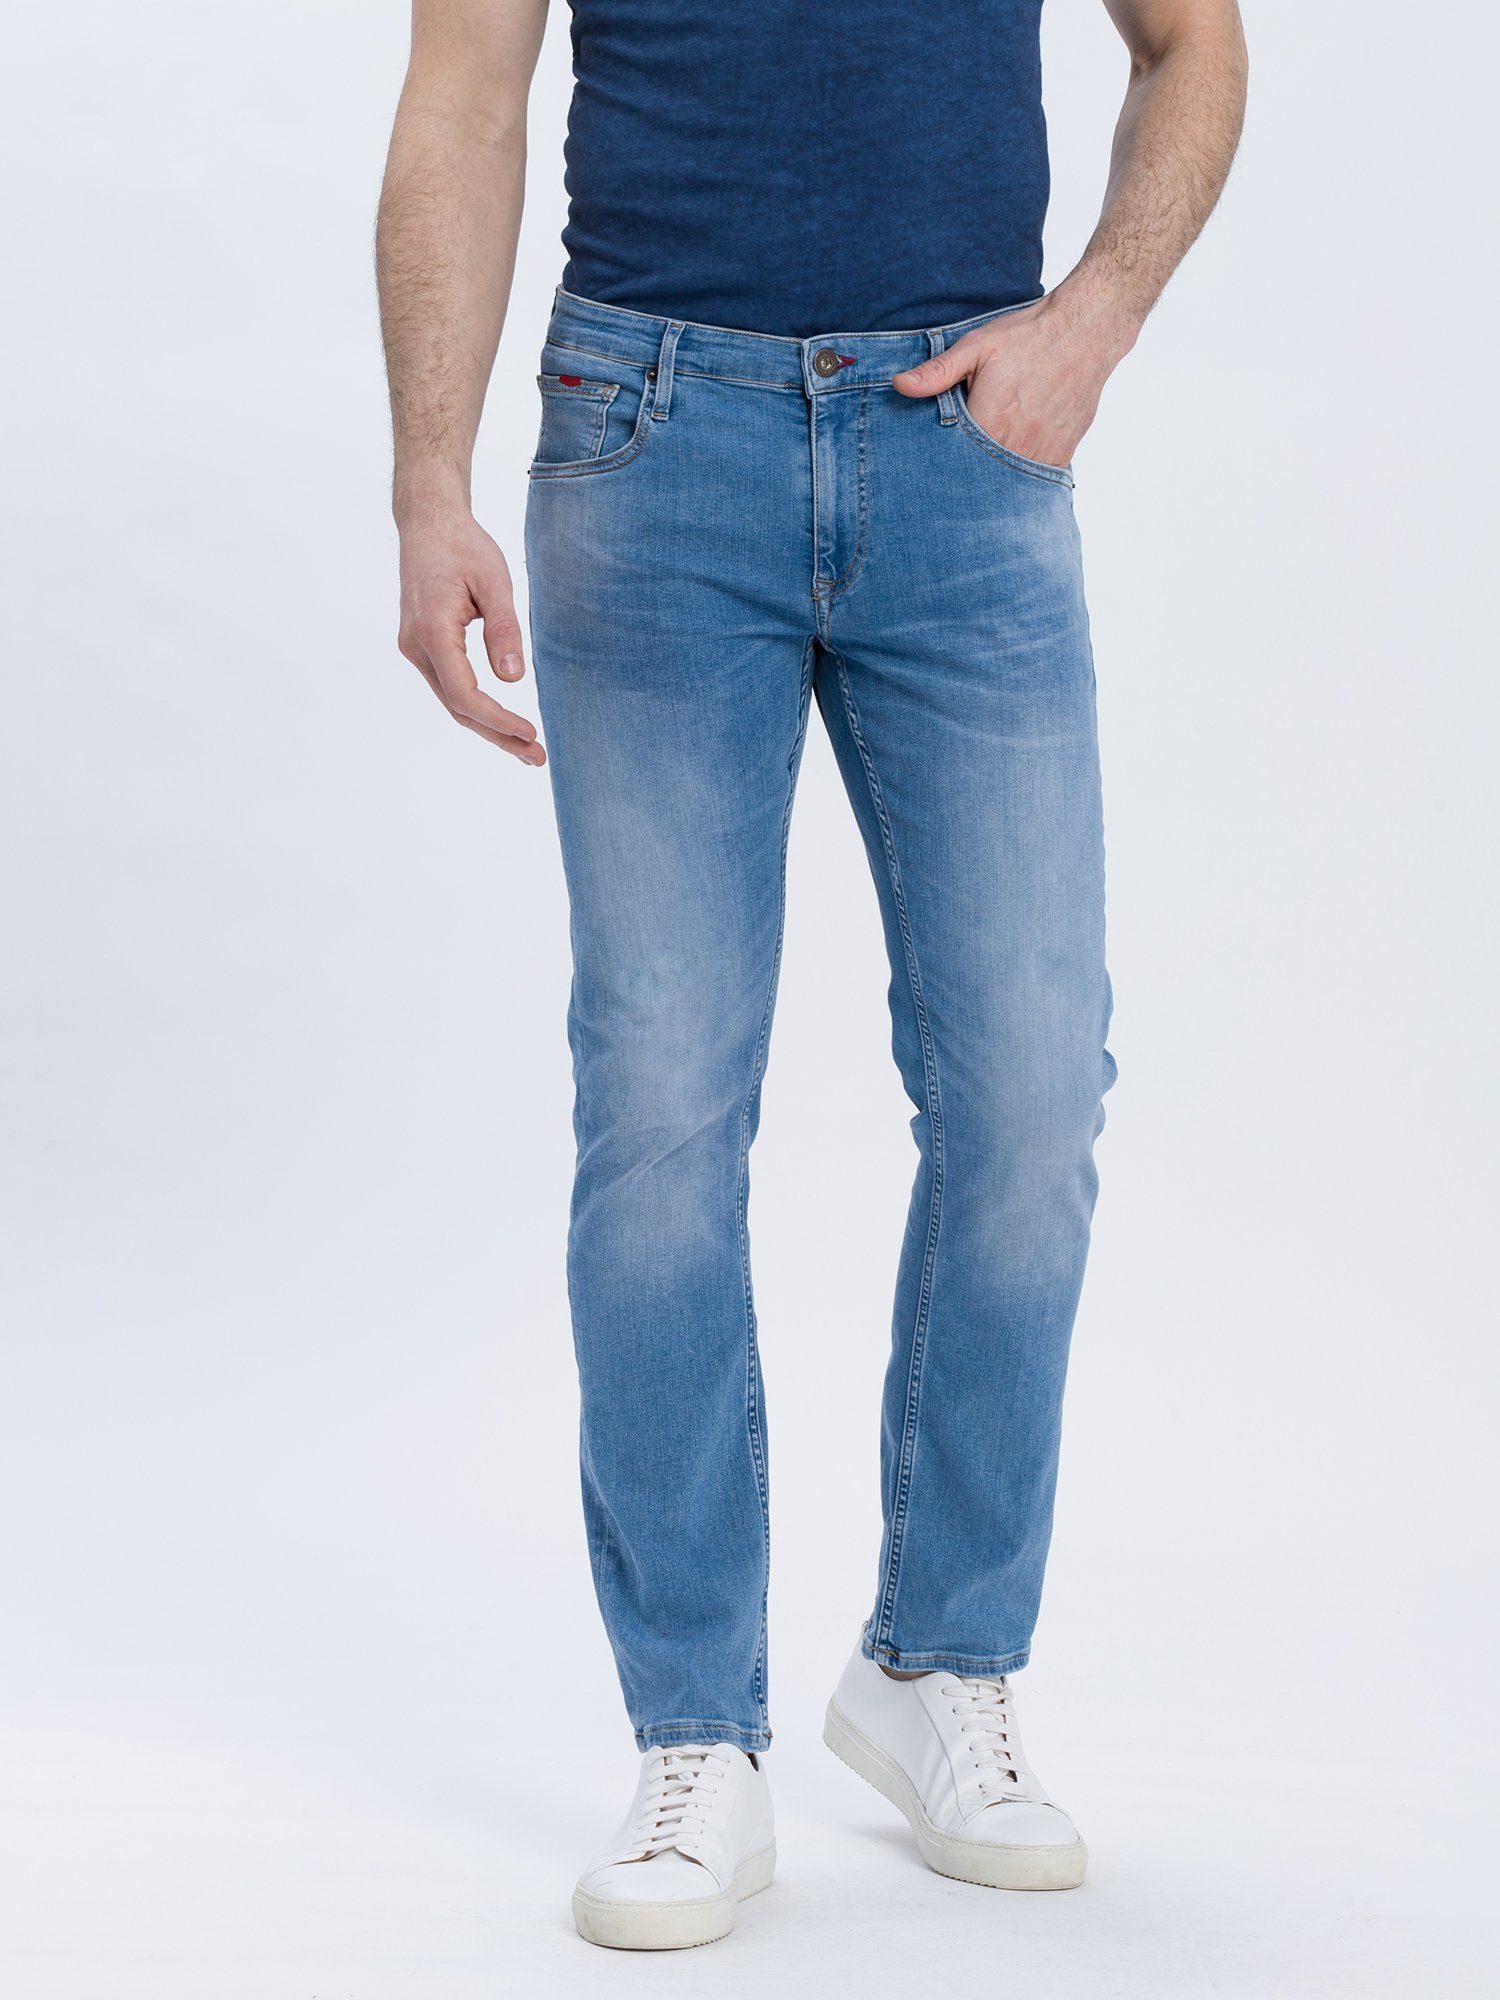 JEANS® CROSS Slim-fit-Jeans Damien